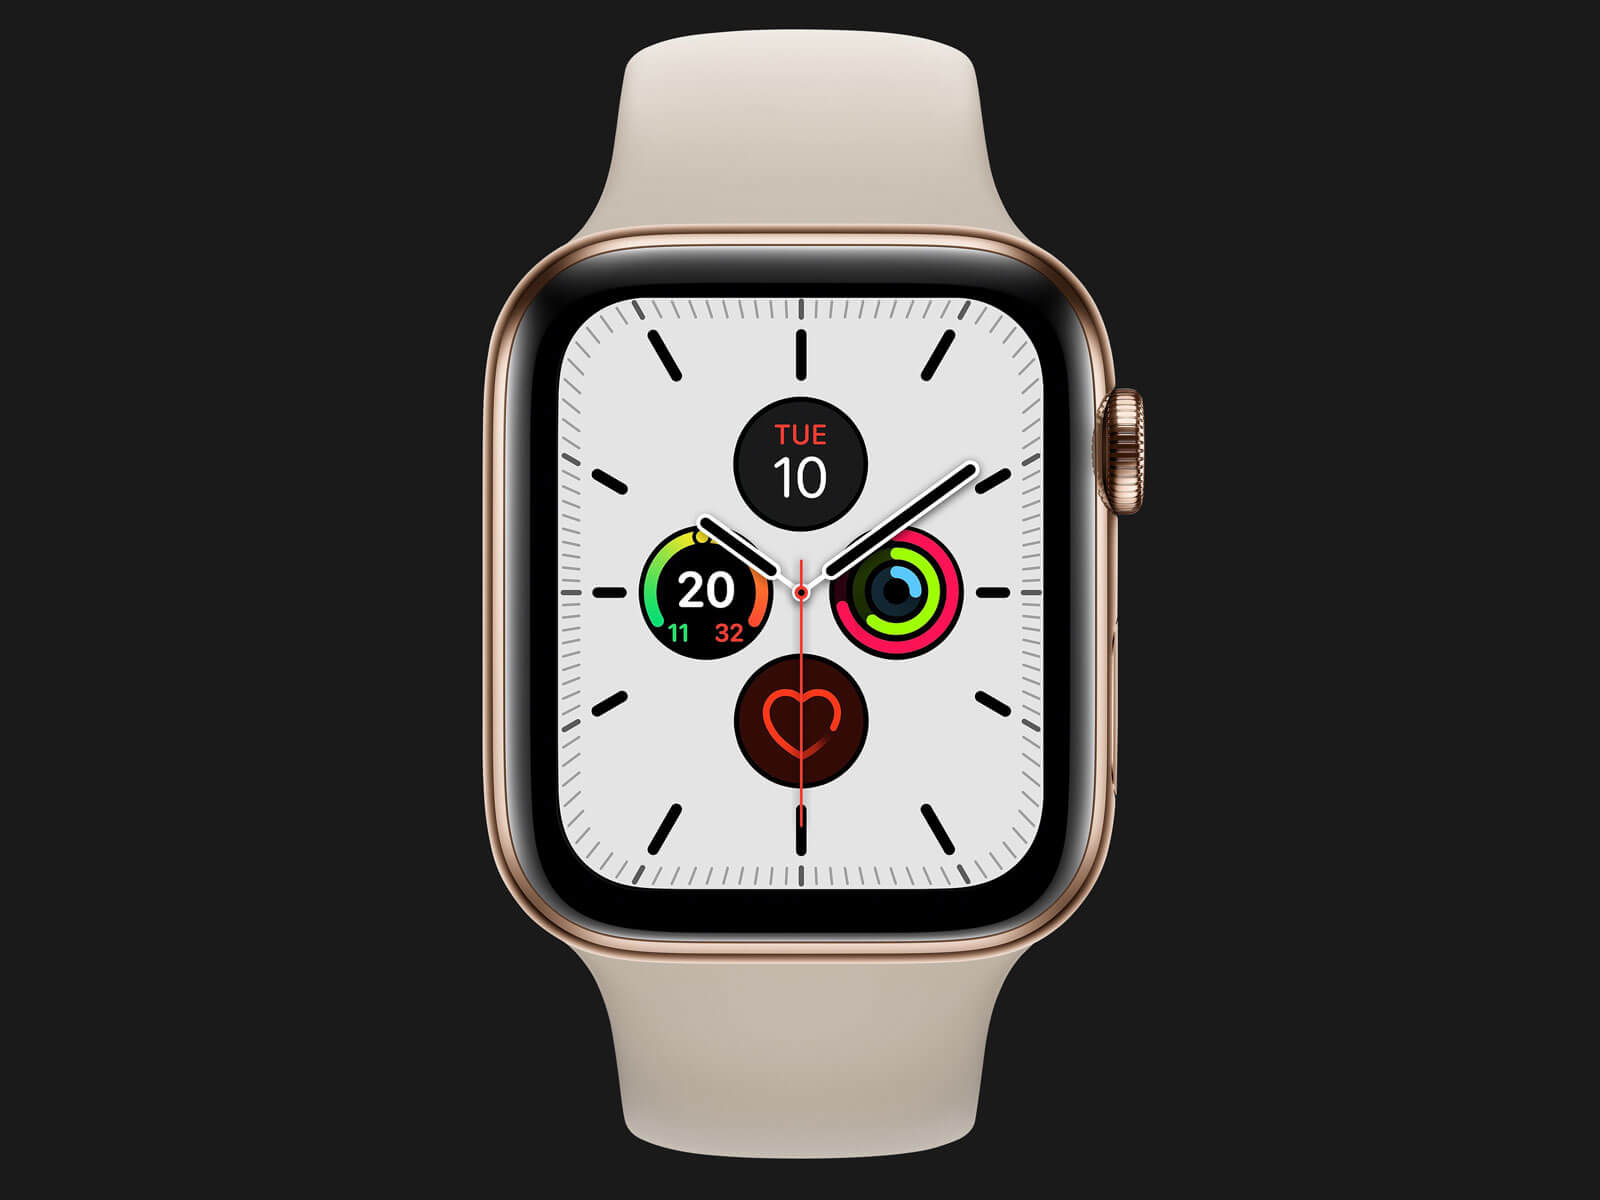 Cơ hội sở hữu Apple Watch series 5 miễn phí! Chỉ cần đăng ký và trúng thưởng, bạn sẽ có trong tay mẫu đồng hồ thông minh tiên tiến nhất. Hãy nhanh tay, hình ảnh liên quan đang chờ bạn khám phá! 